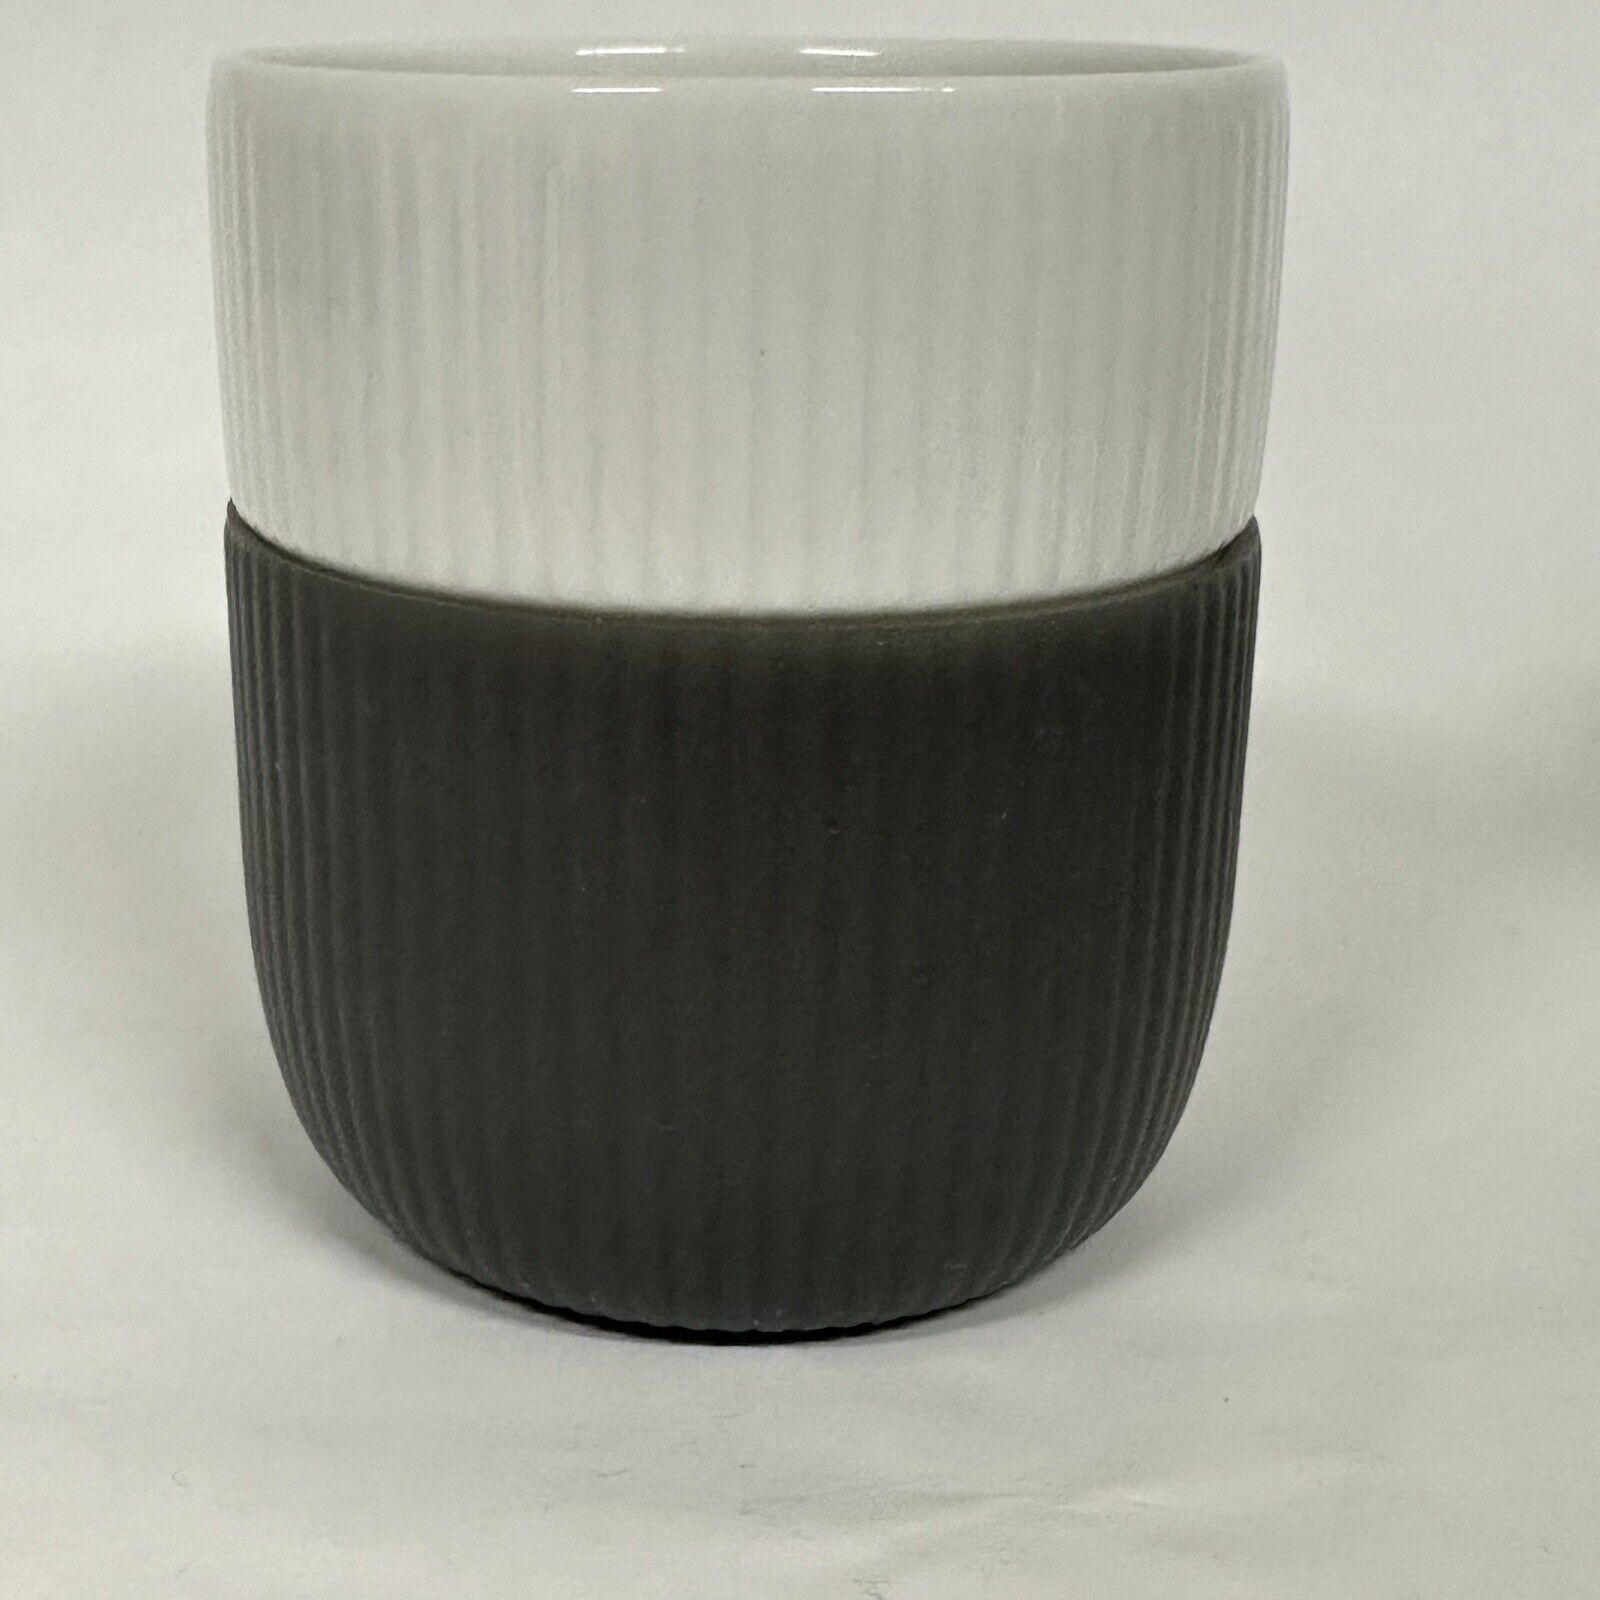 Royal Copenhagen White Fluted Contrast Mug No.495 Anthracite (Chocolate Gray)